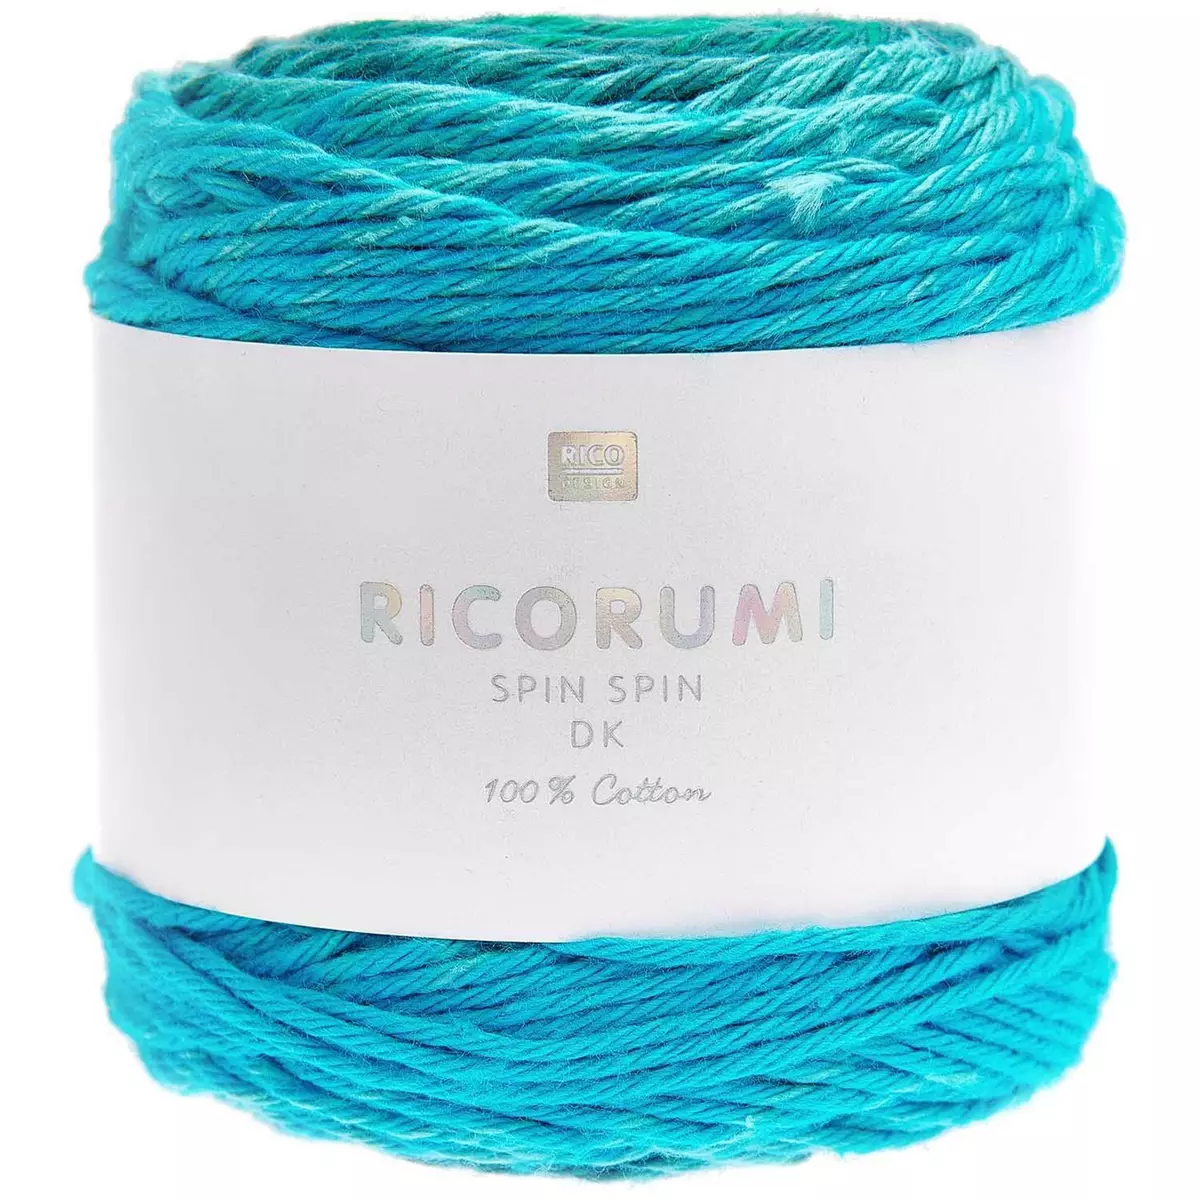 RICO DESIGN Pelote fil coton turquoise - ricorumi spin spin 50 g